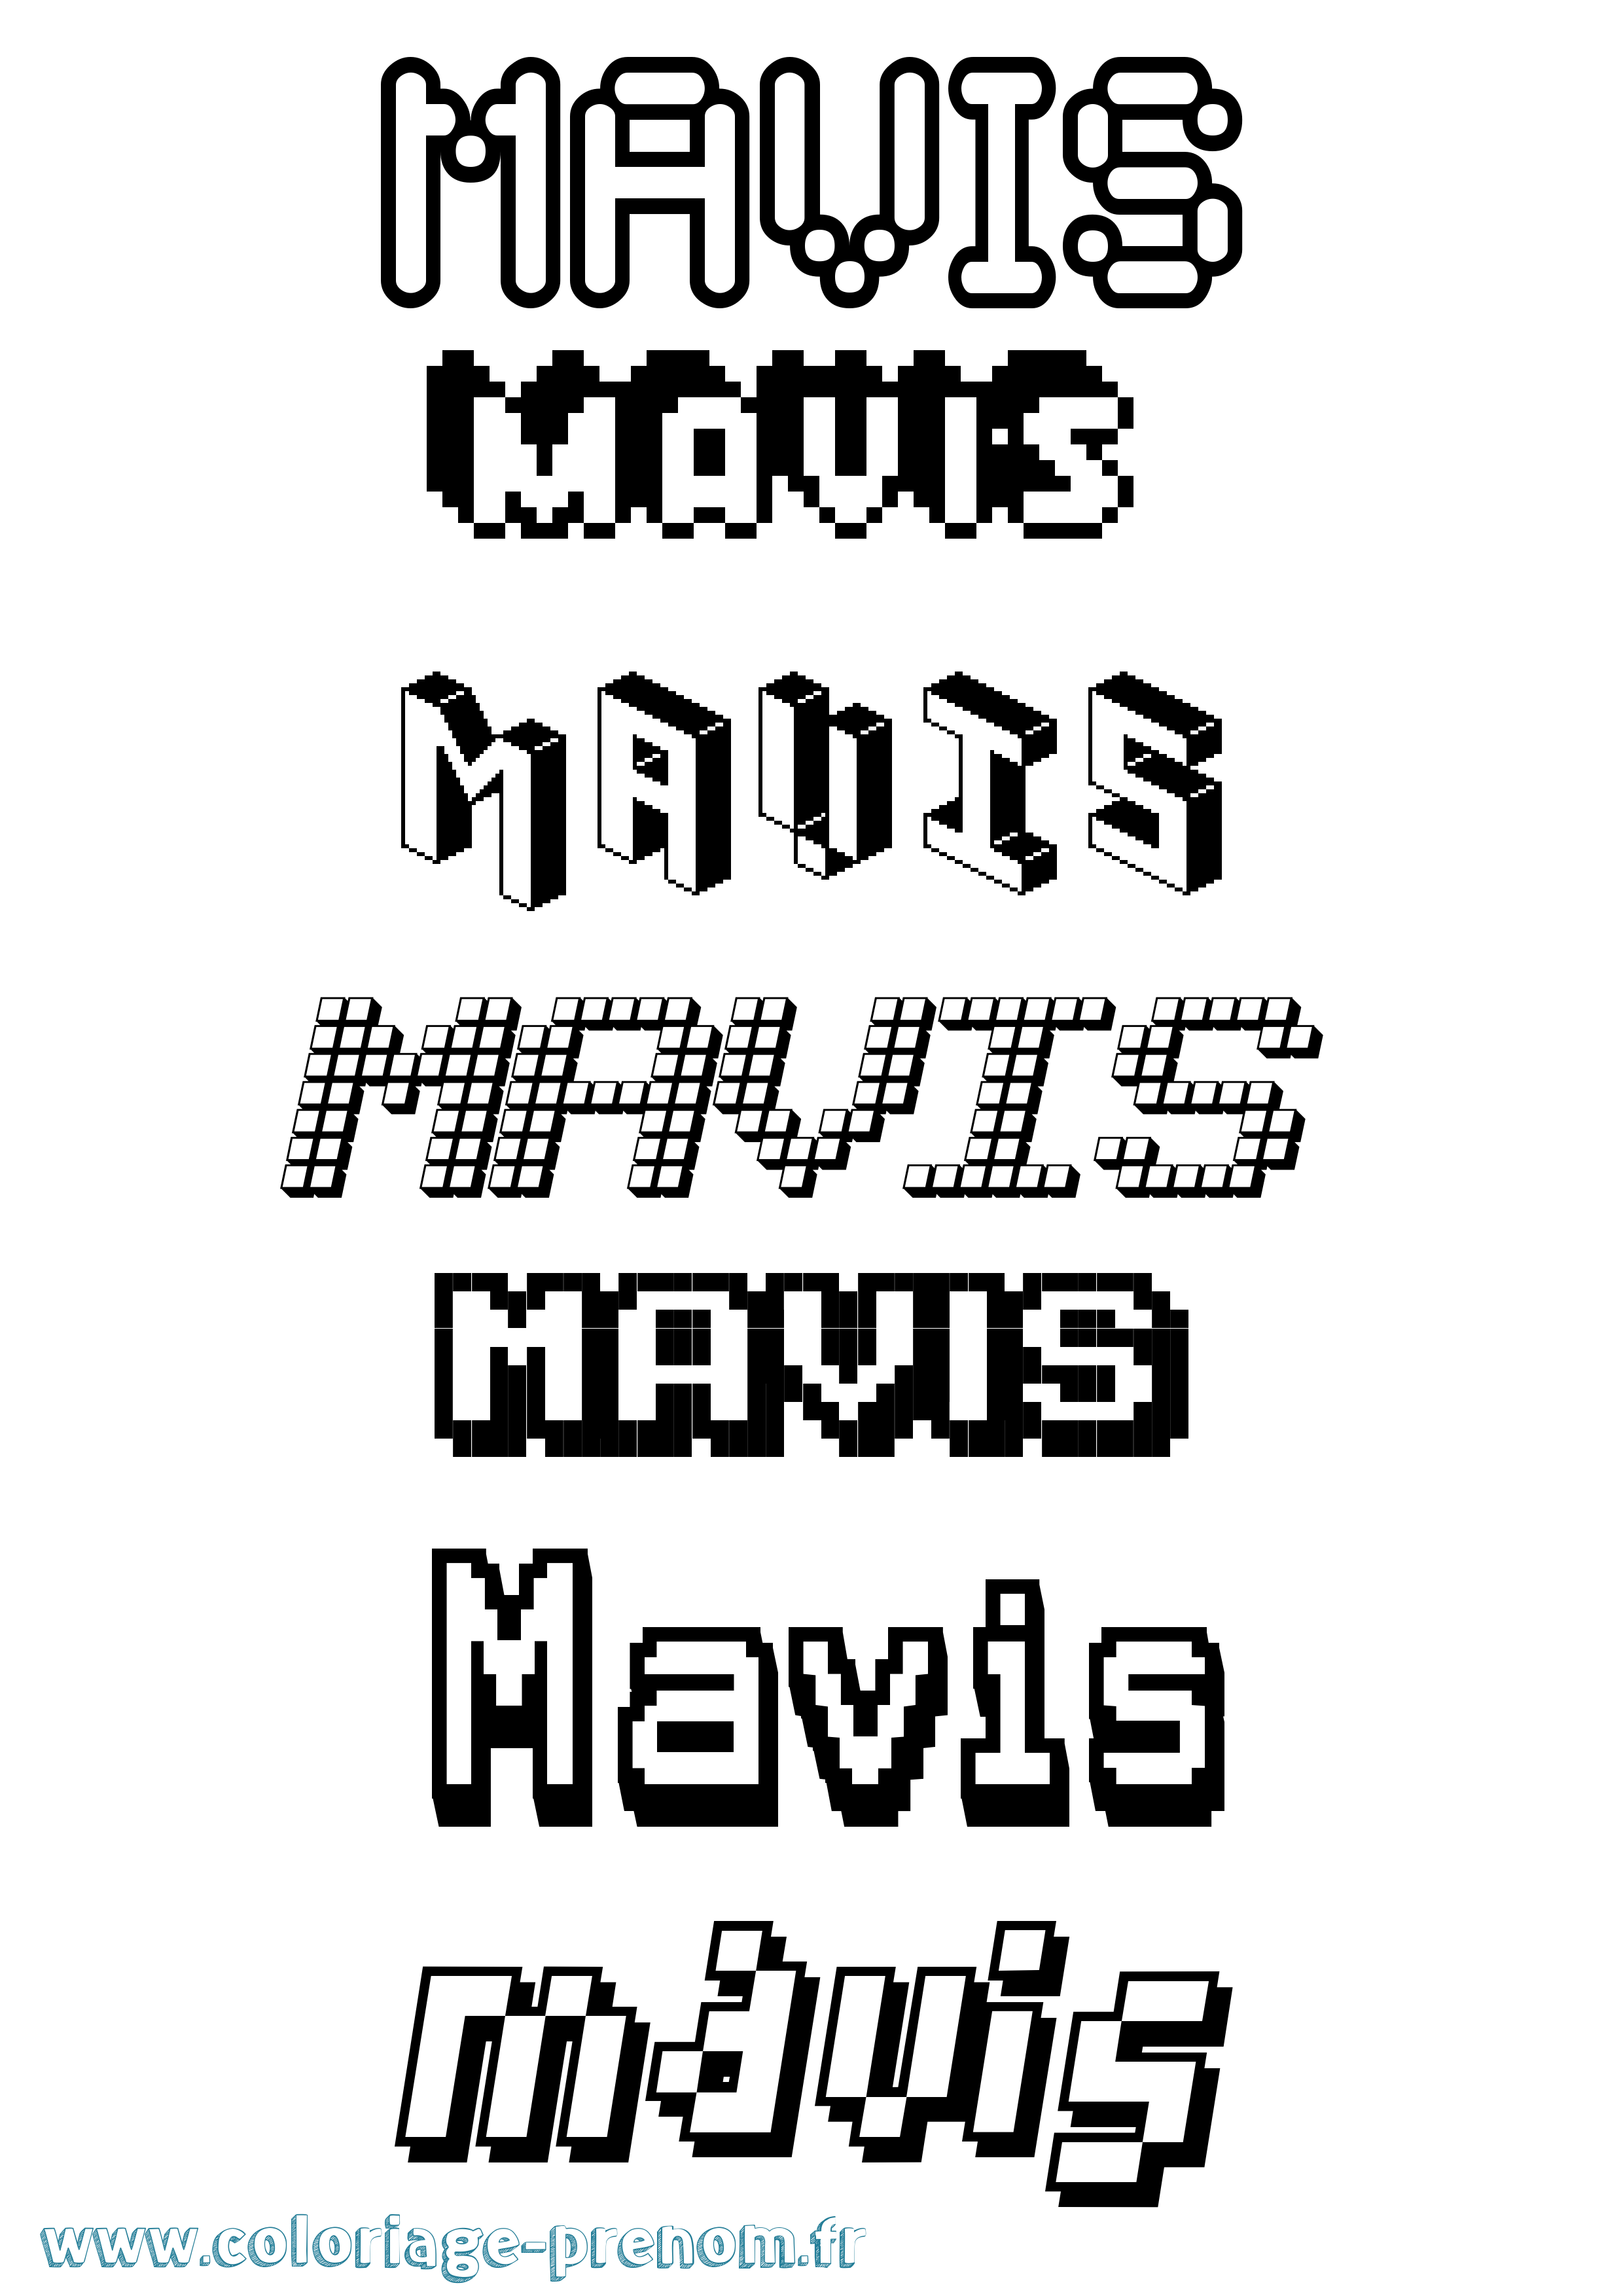 Coloriage prénom Mavis Pixel